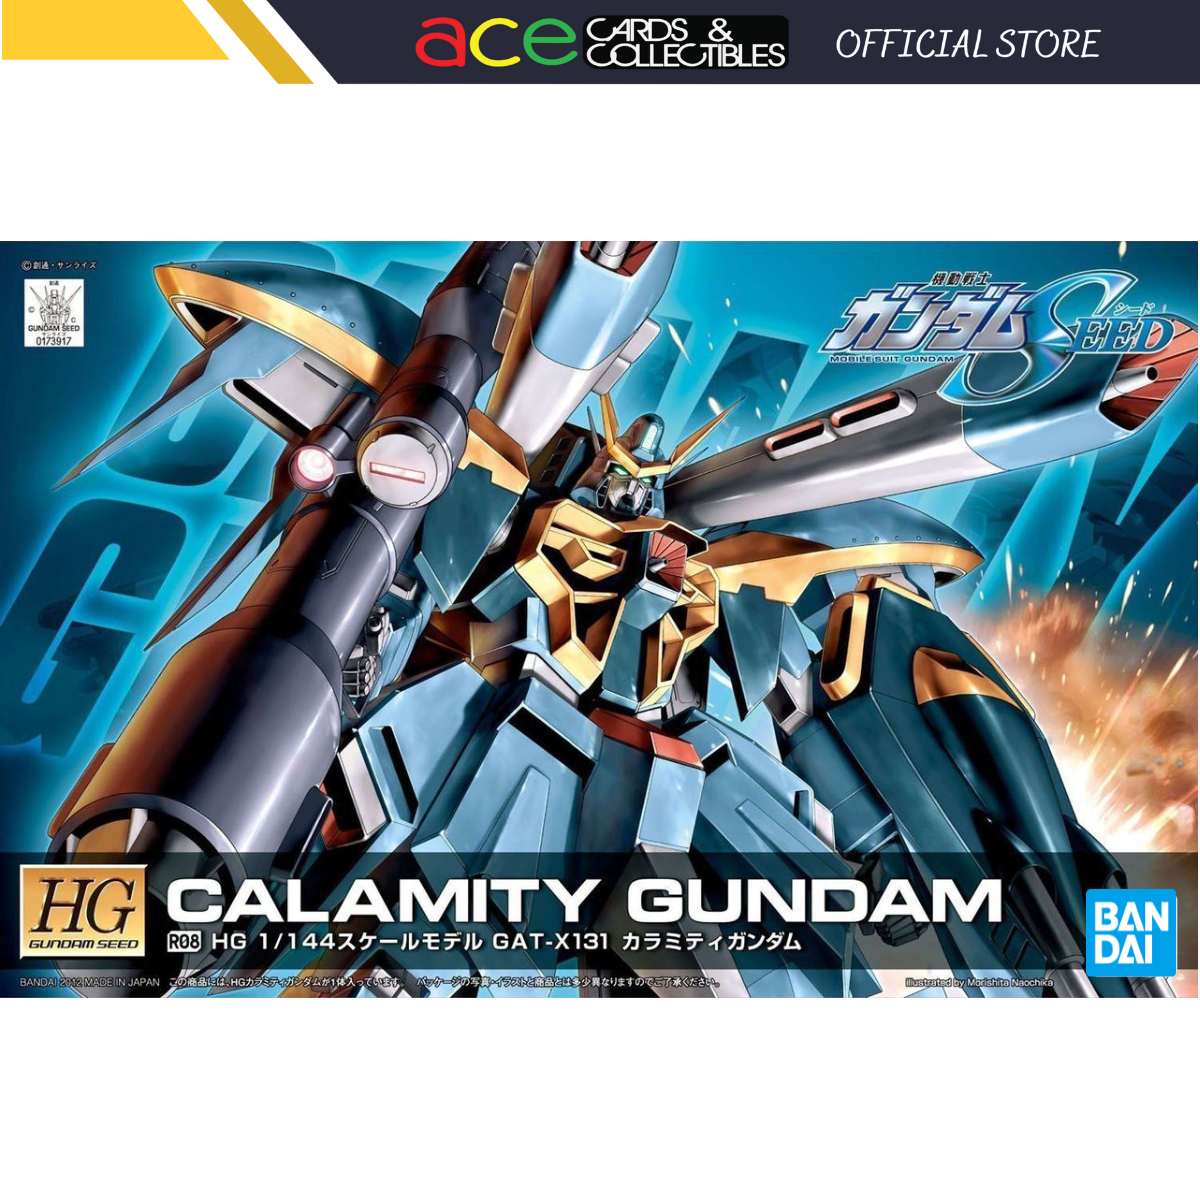 Gunpla HG 1/144 RO8 Calamity Gundam-Bandai-Ace Cards & Collectibles